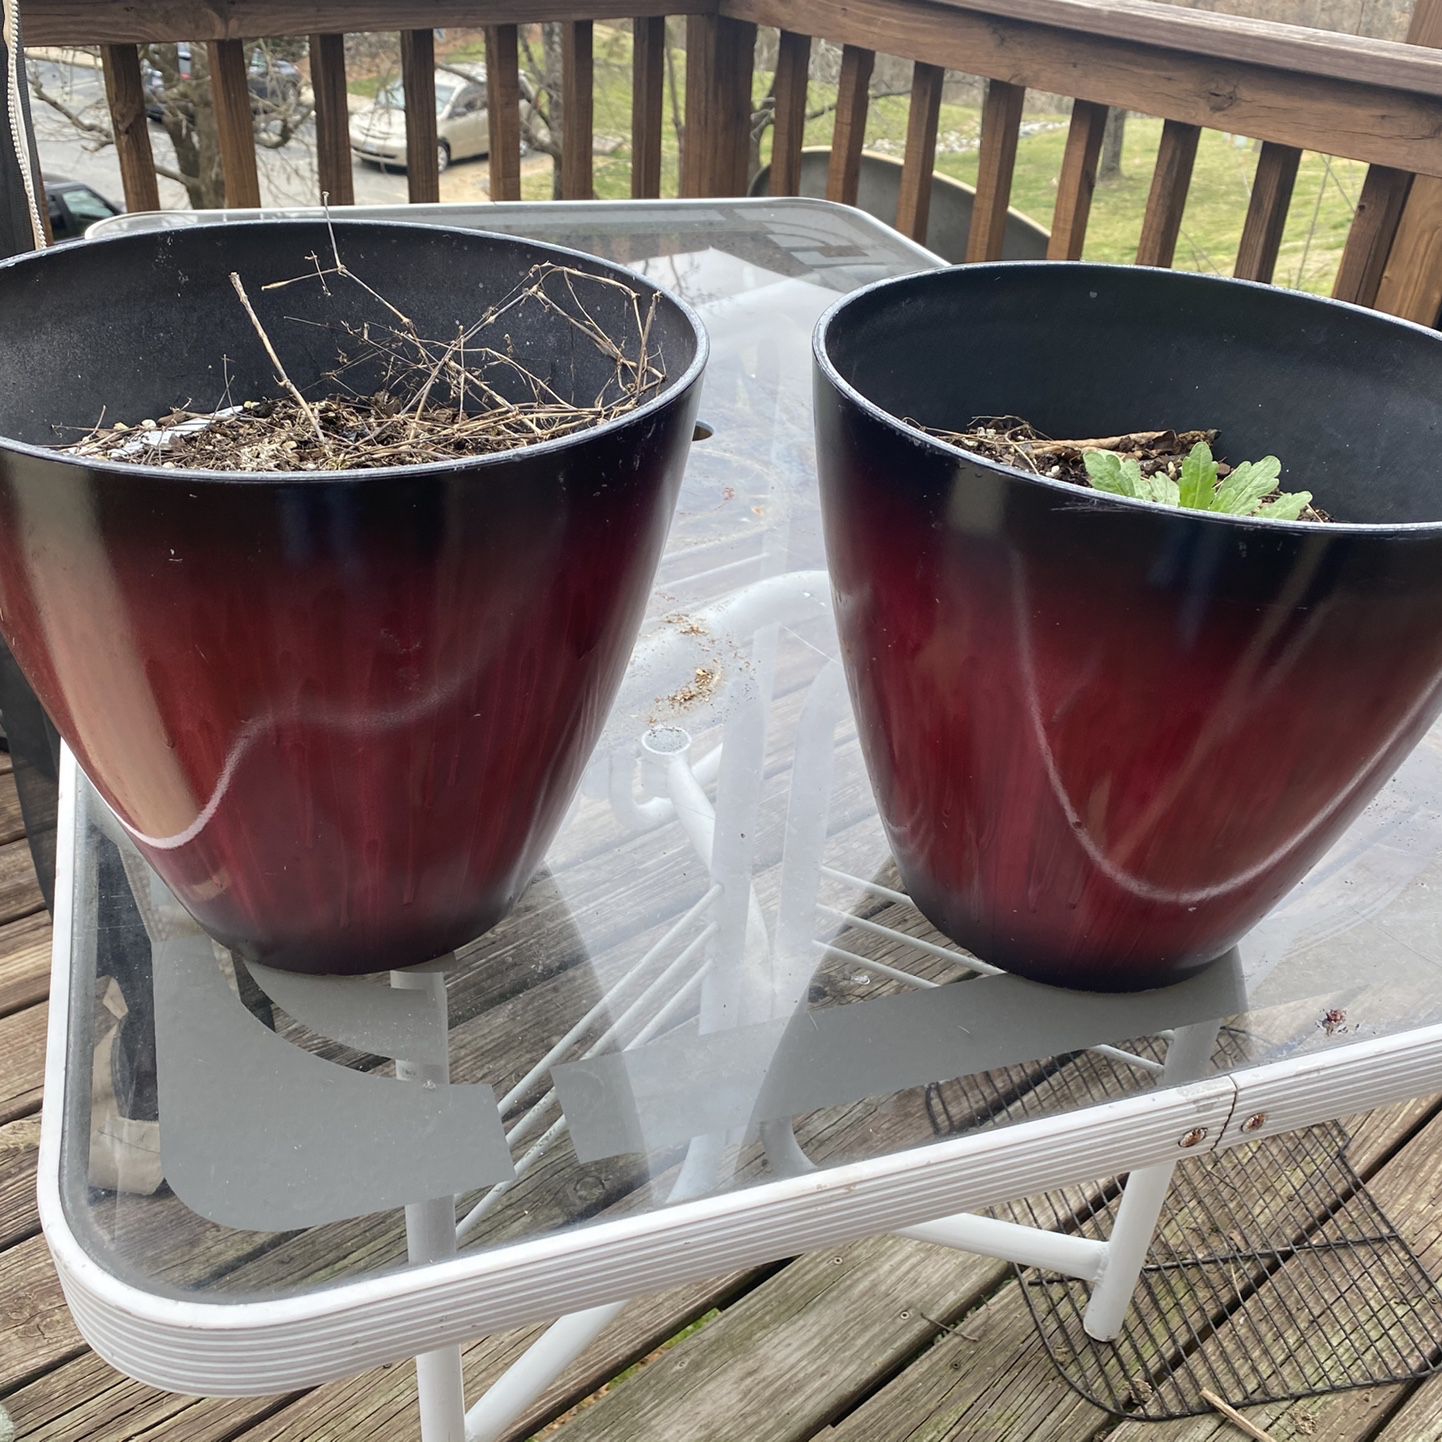 Two flower pots